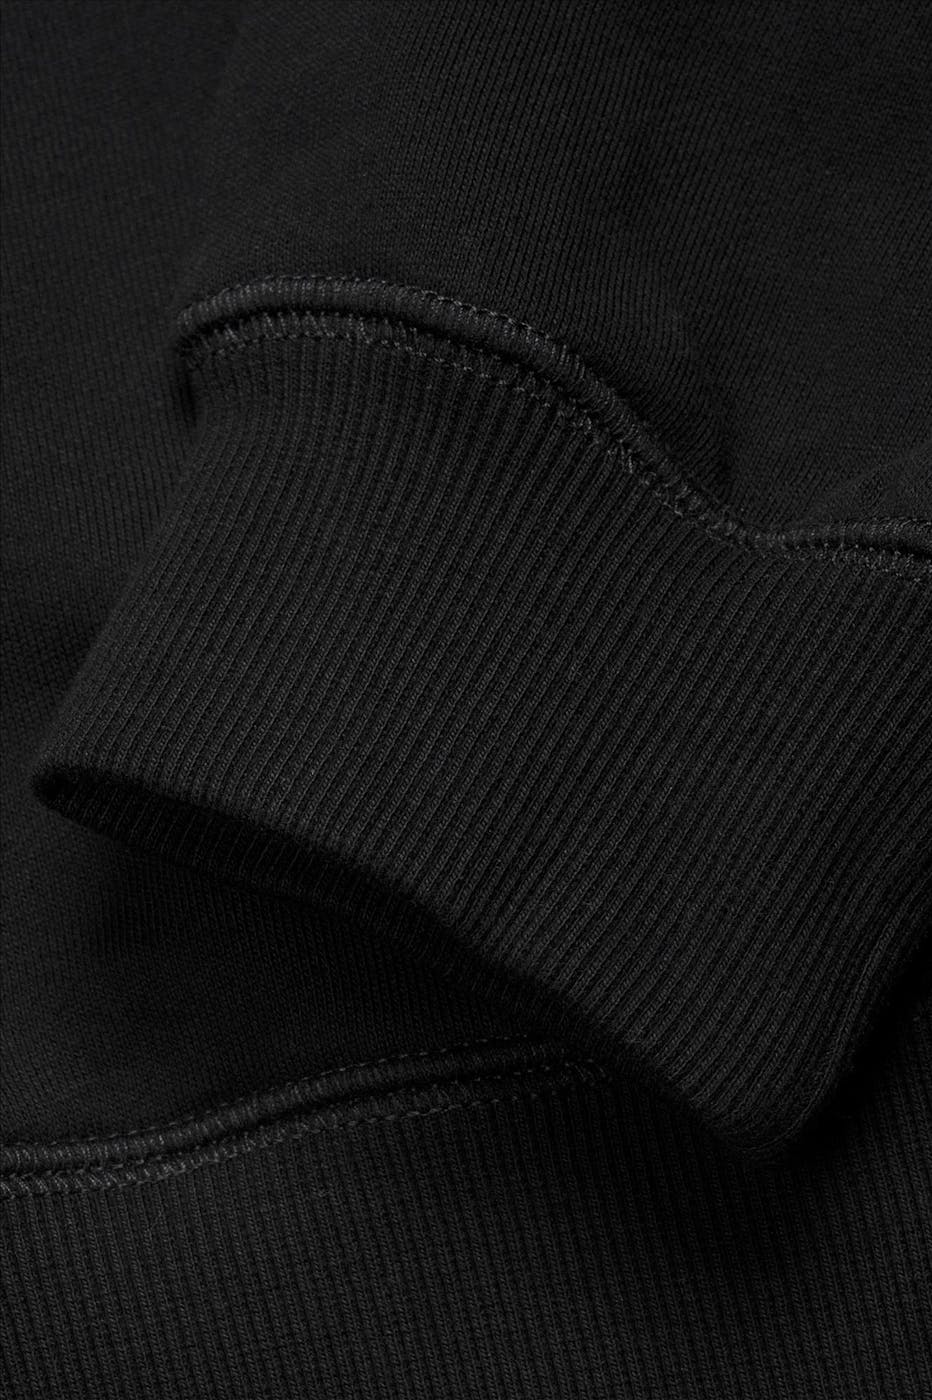 Carhartt WIP - Zwarte Chase hoodie